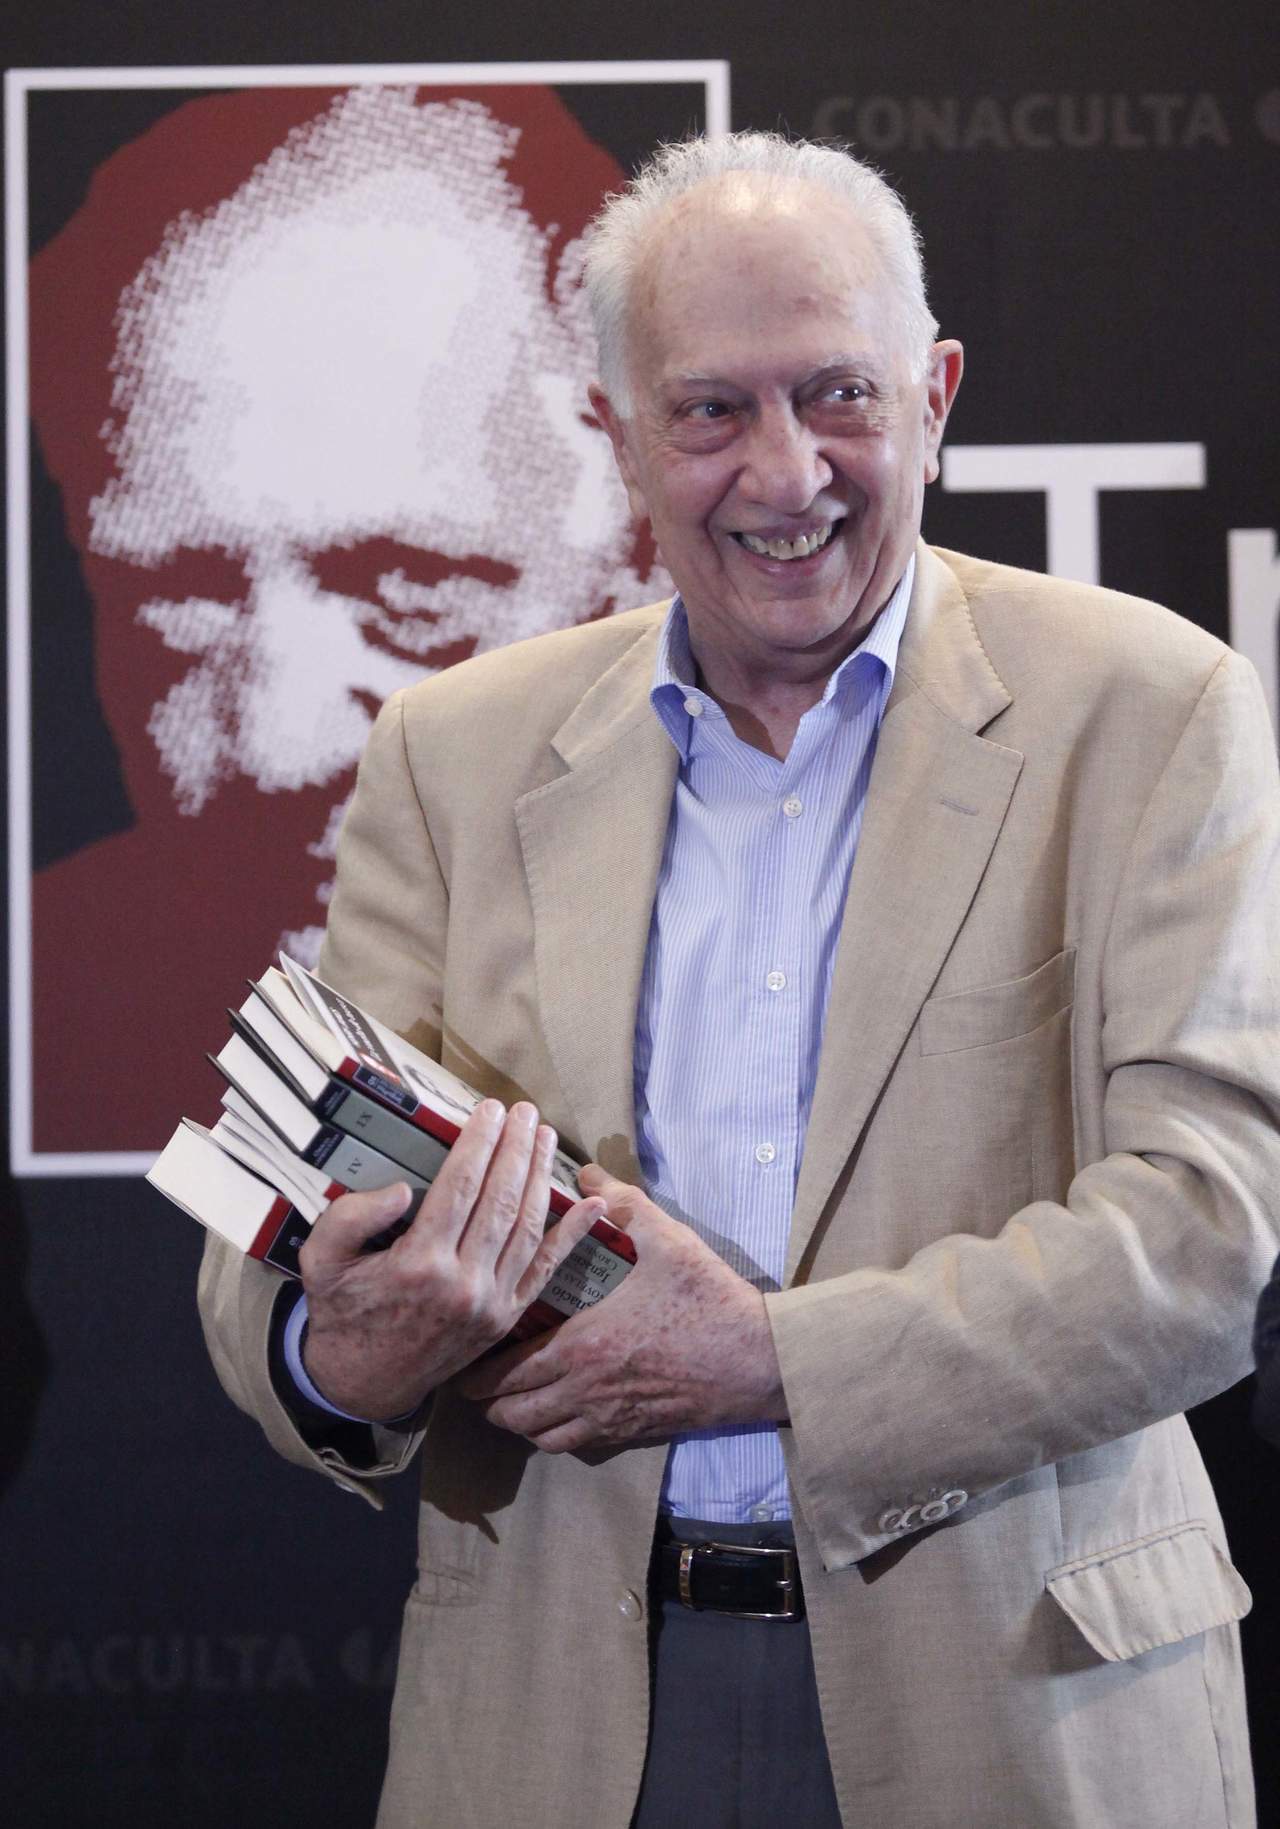 Ganador del Premio Cervantes 2005, Pitol ha destacado por sus novelas colmadas de humor refinado y mordaz, a través de las cuales ofrece una mirada a la realidad. (ARCHIVO)